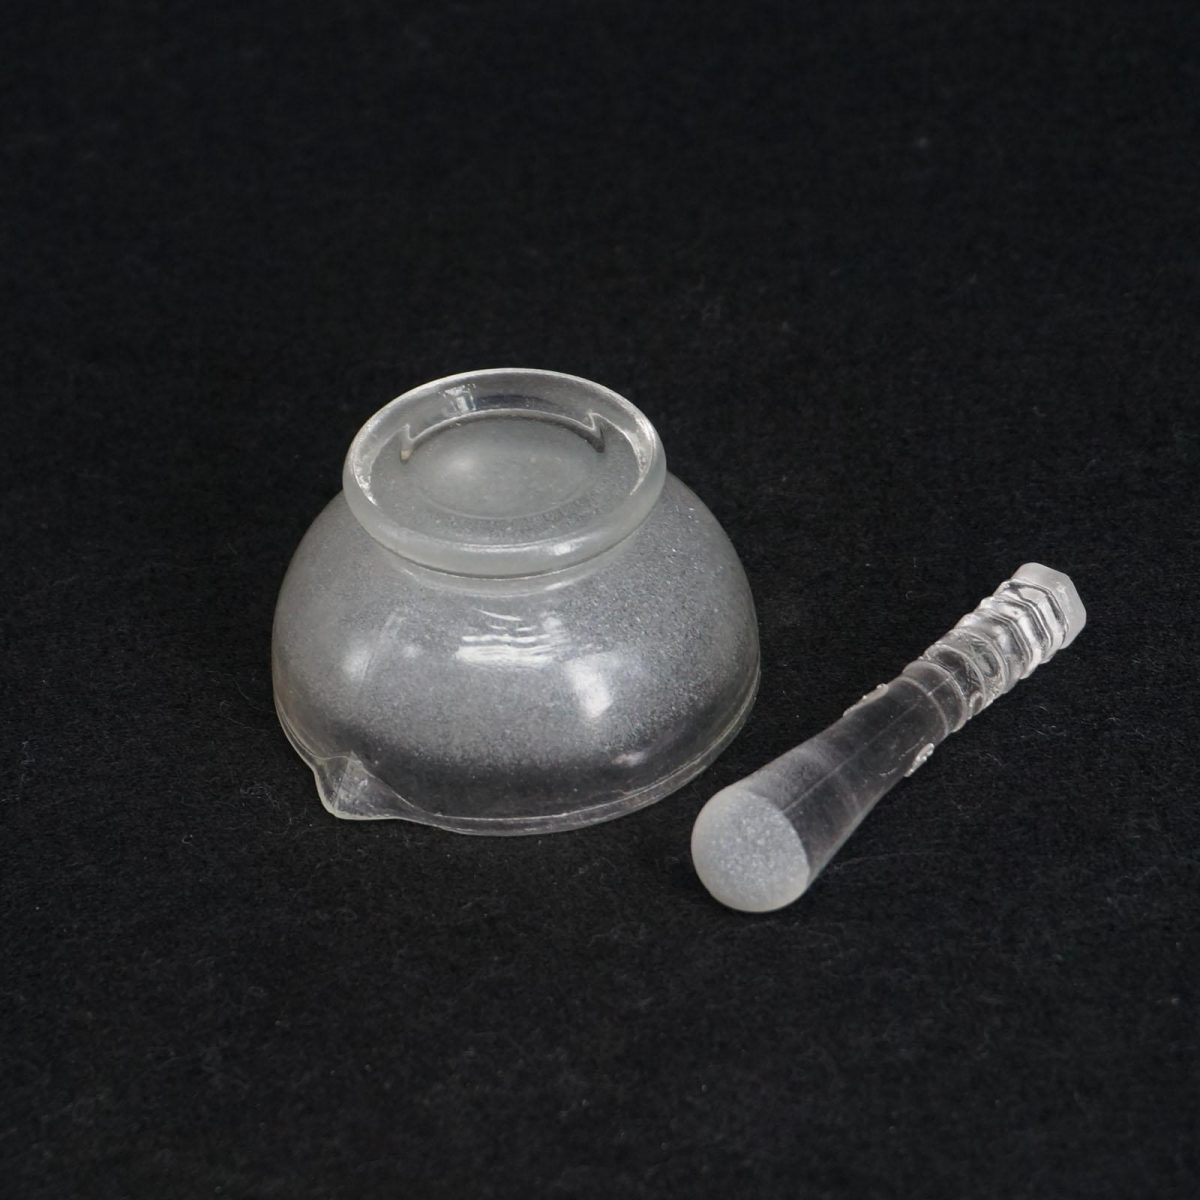 Γουδί γυάλινο 12cm dia με γουδοχέρι - Mortar with glass pestle dia 120mm